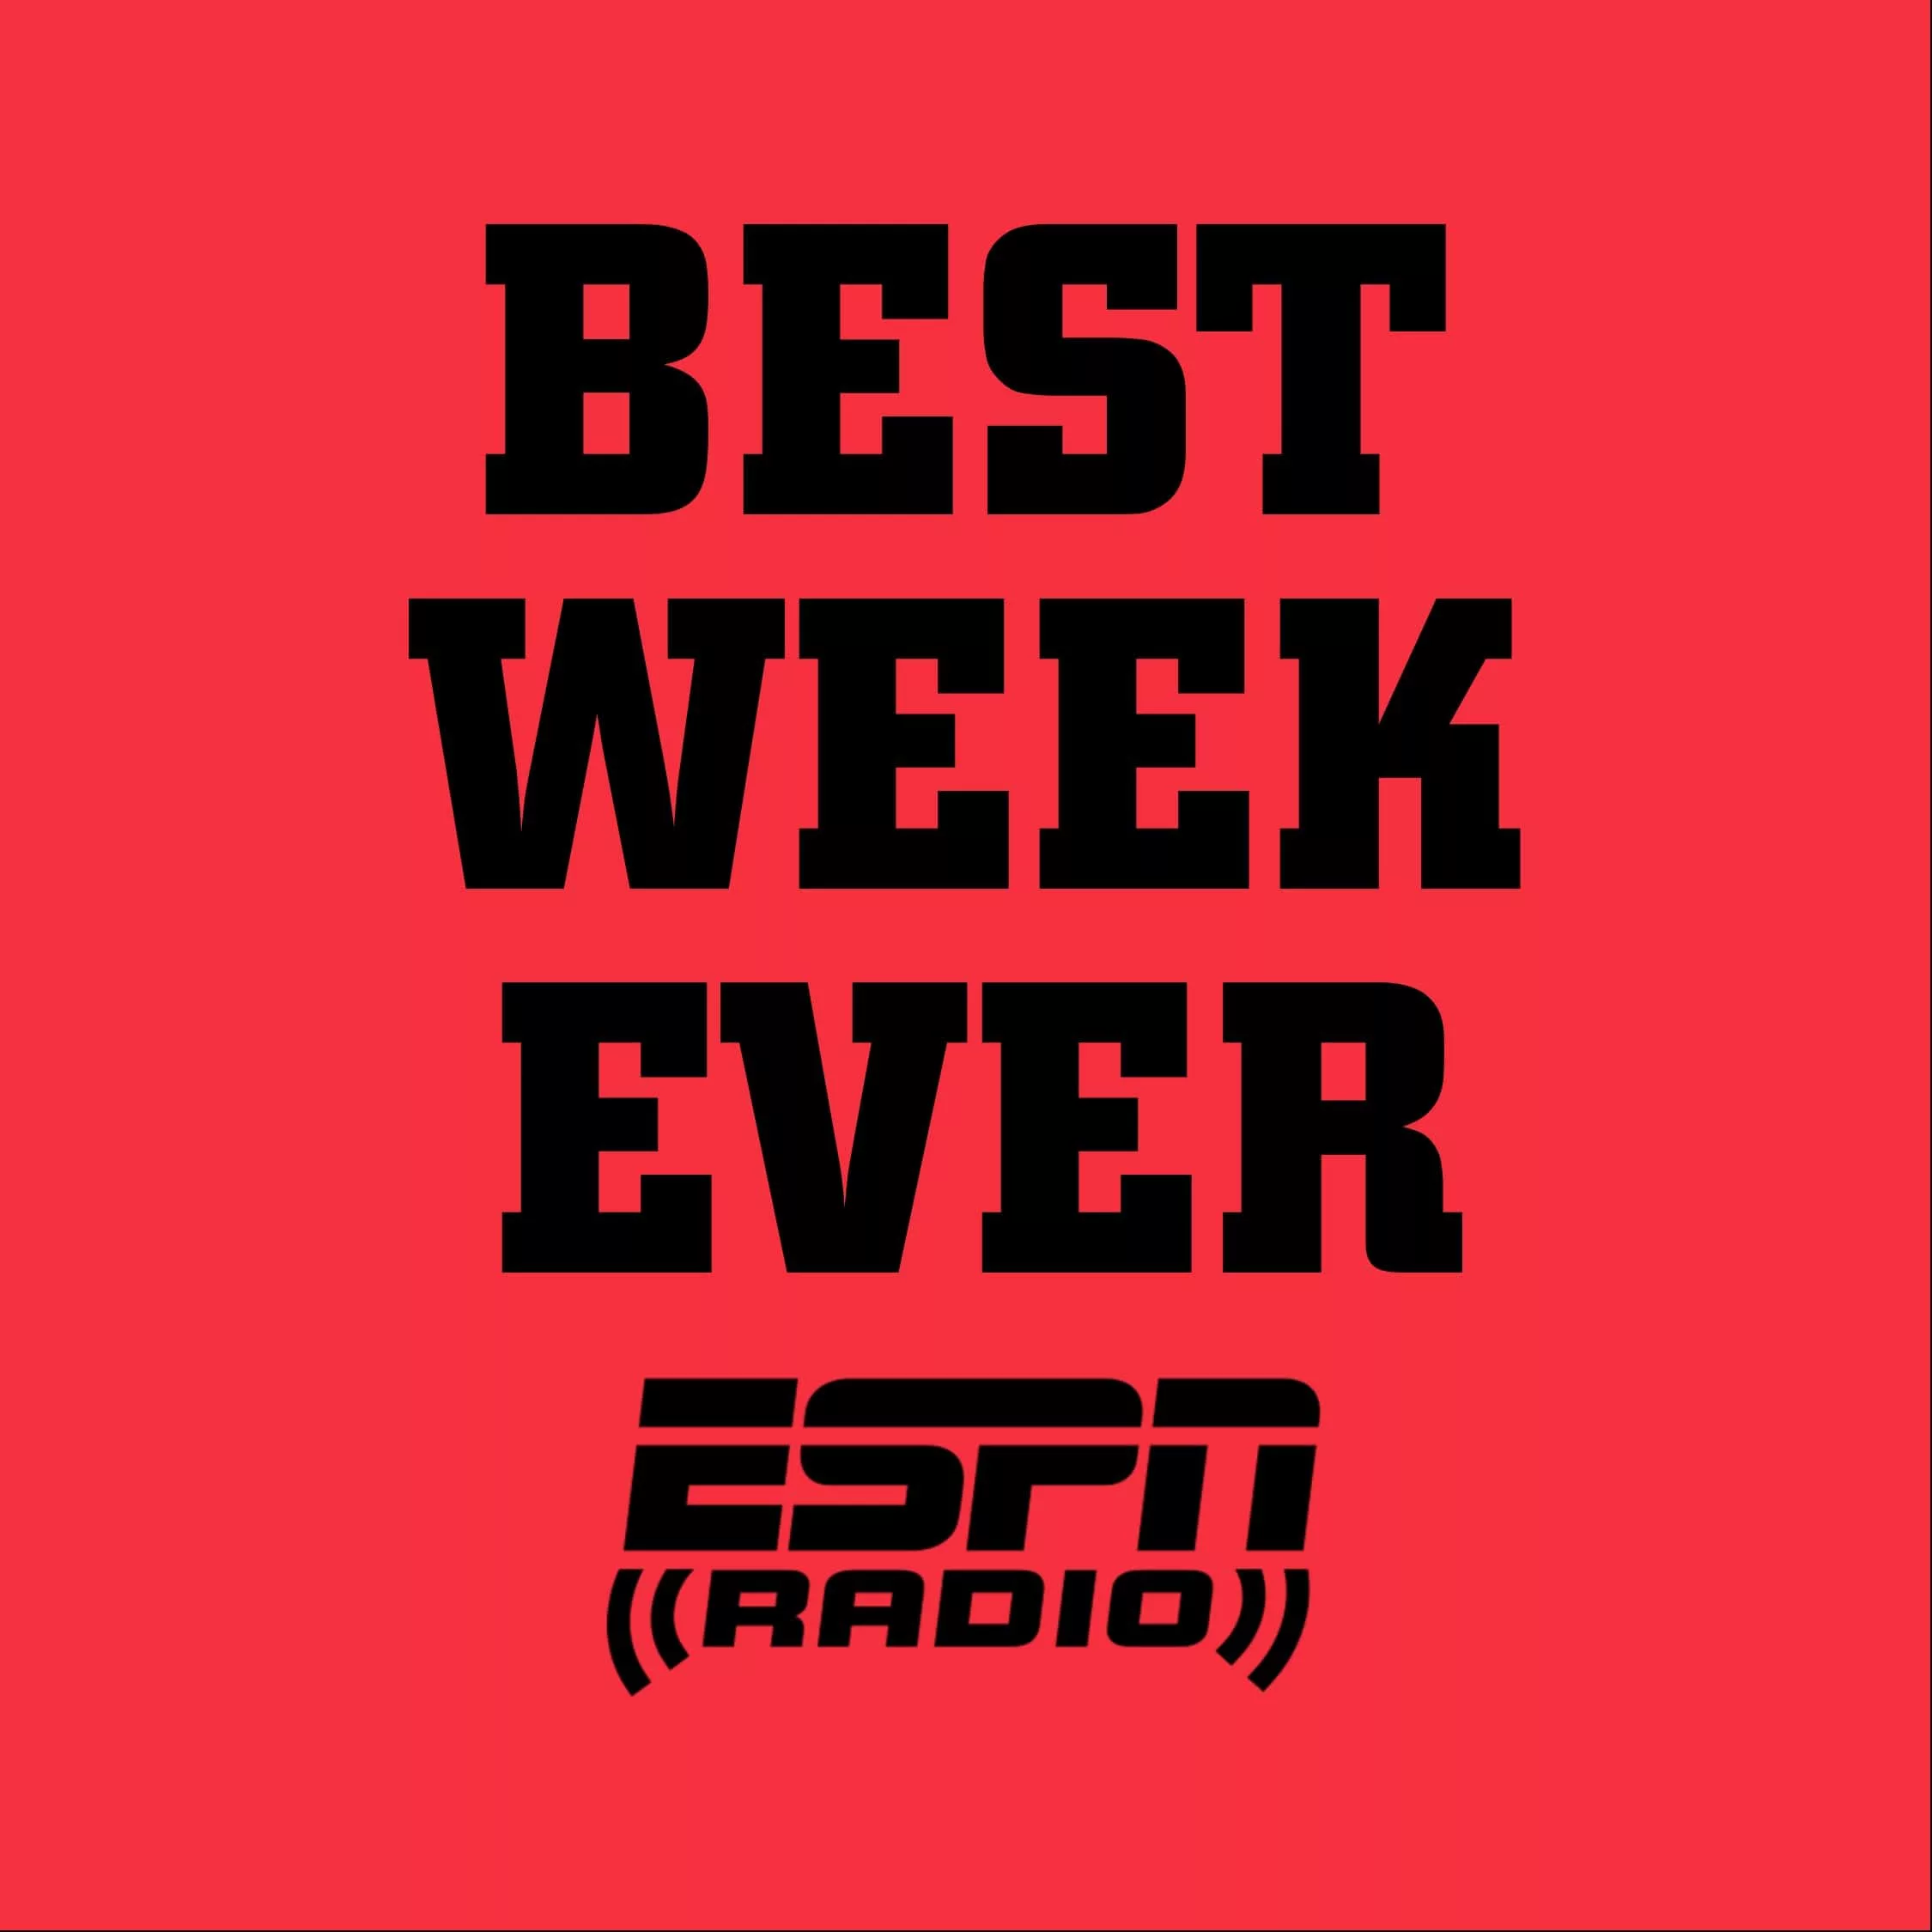 Best-Week-Ever